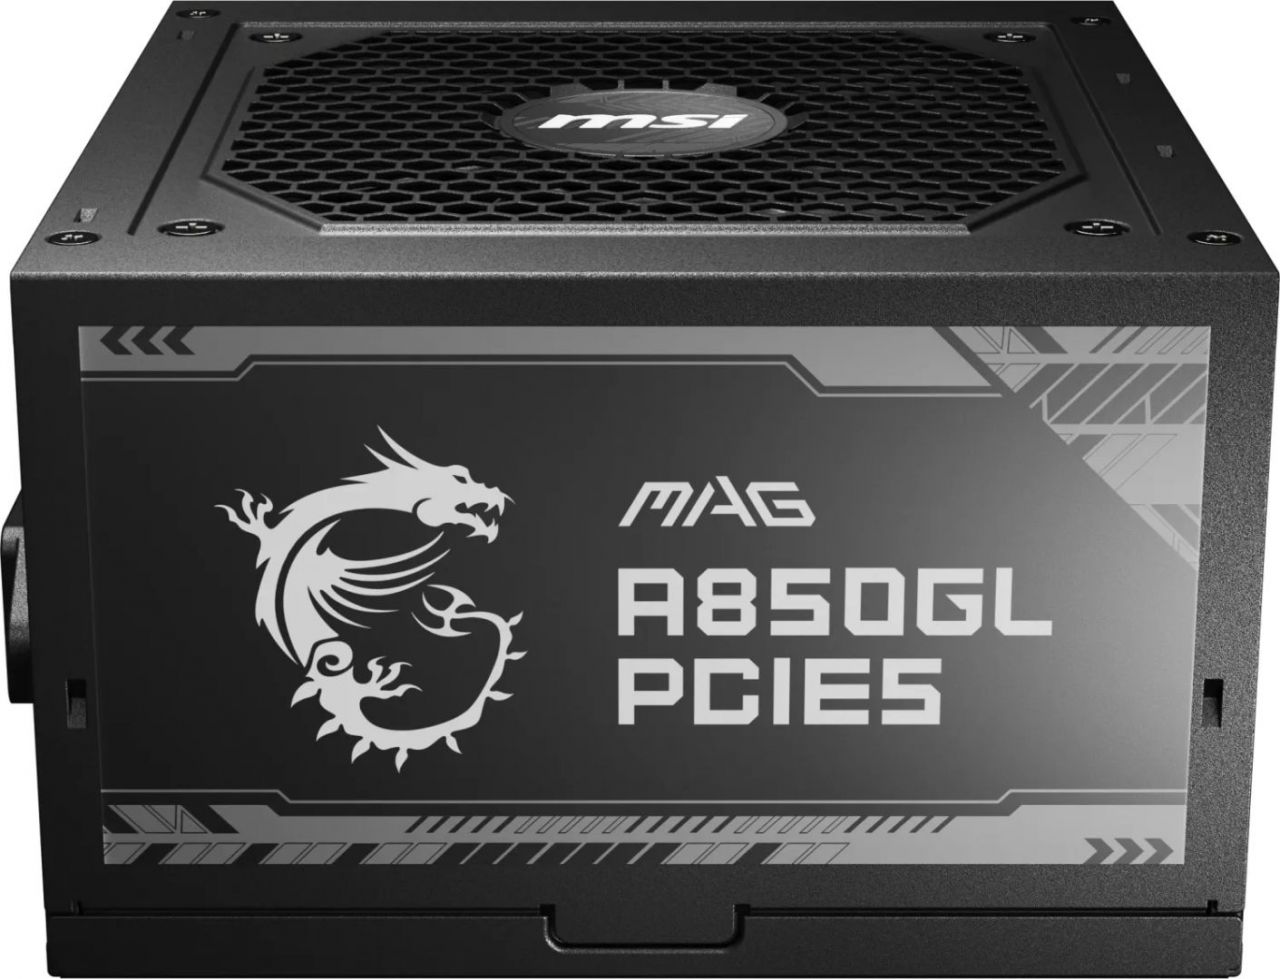 Msi 850W 80+ Gold MAG A850GL PCIE5